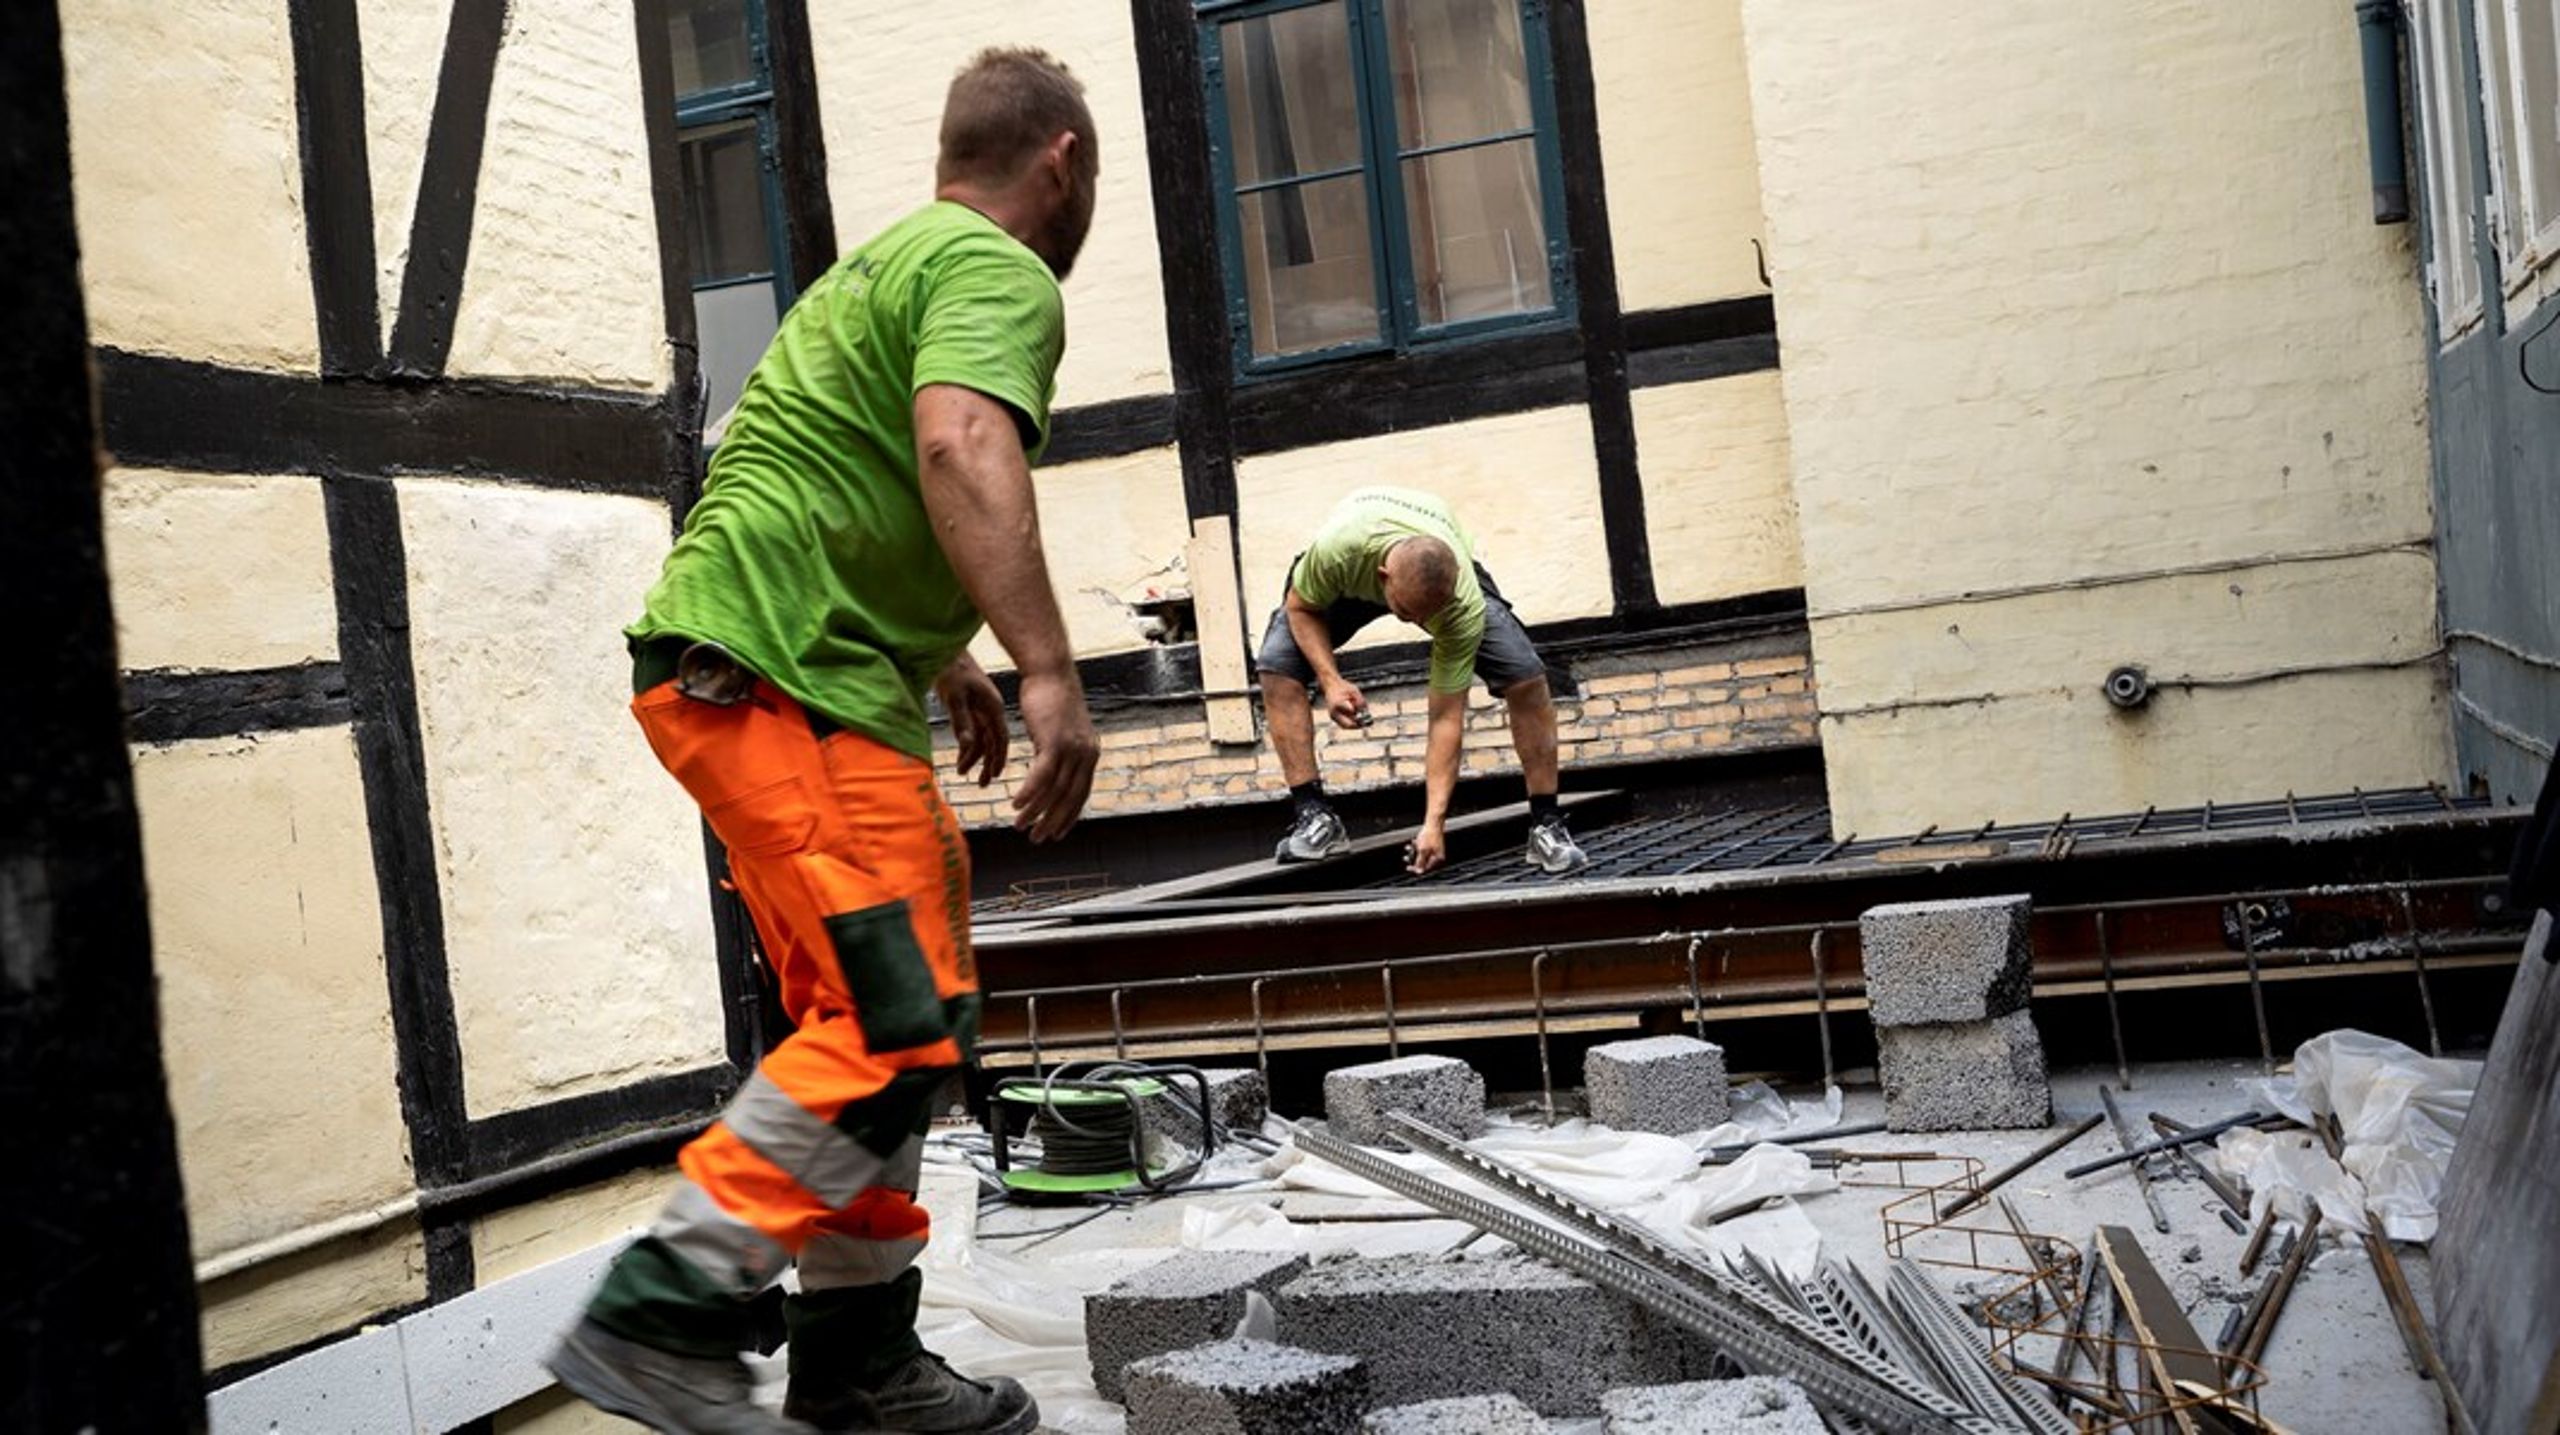 Kun omkring hver femte arbejdsulykke blandt migrantarbejdere på byggepladser ender med at blive indrapporteret, viser ny rapport fra Aalborg Universitet.